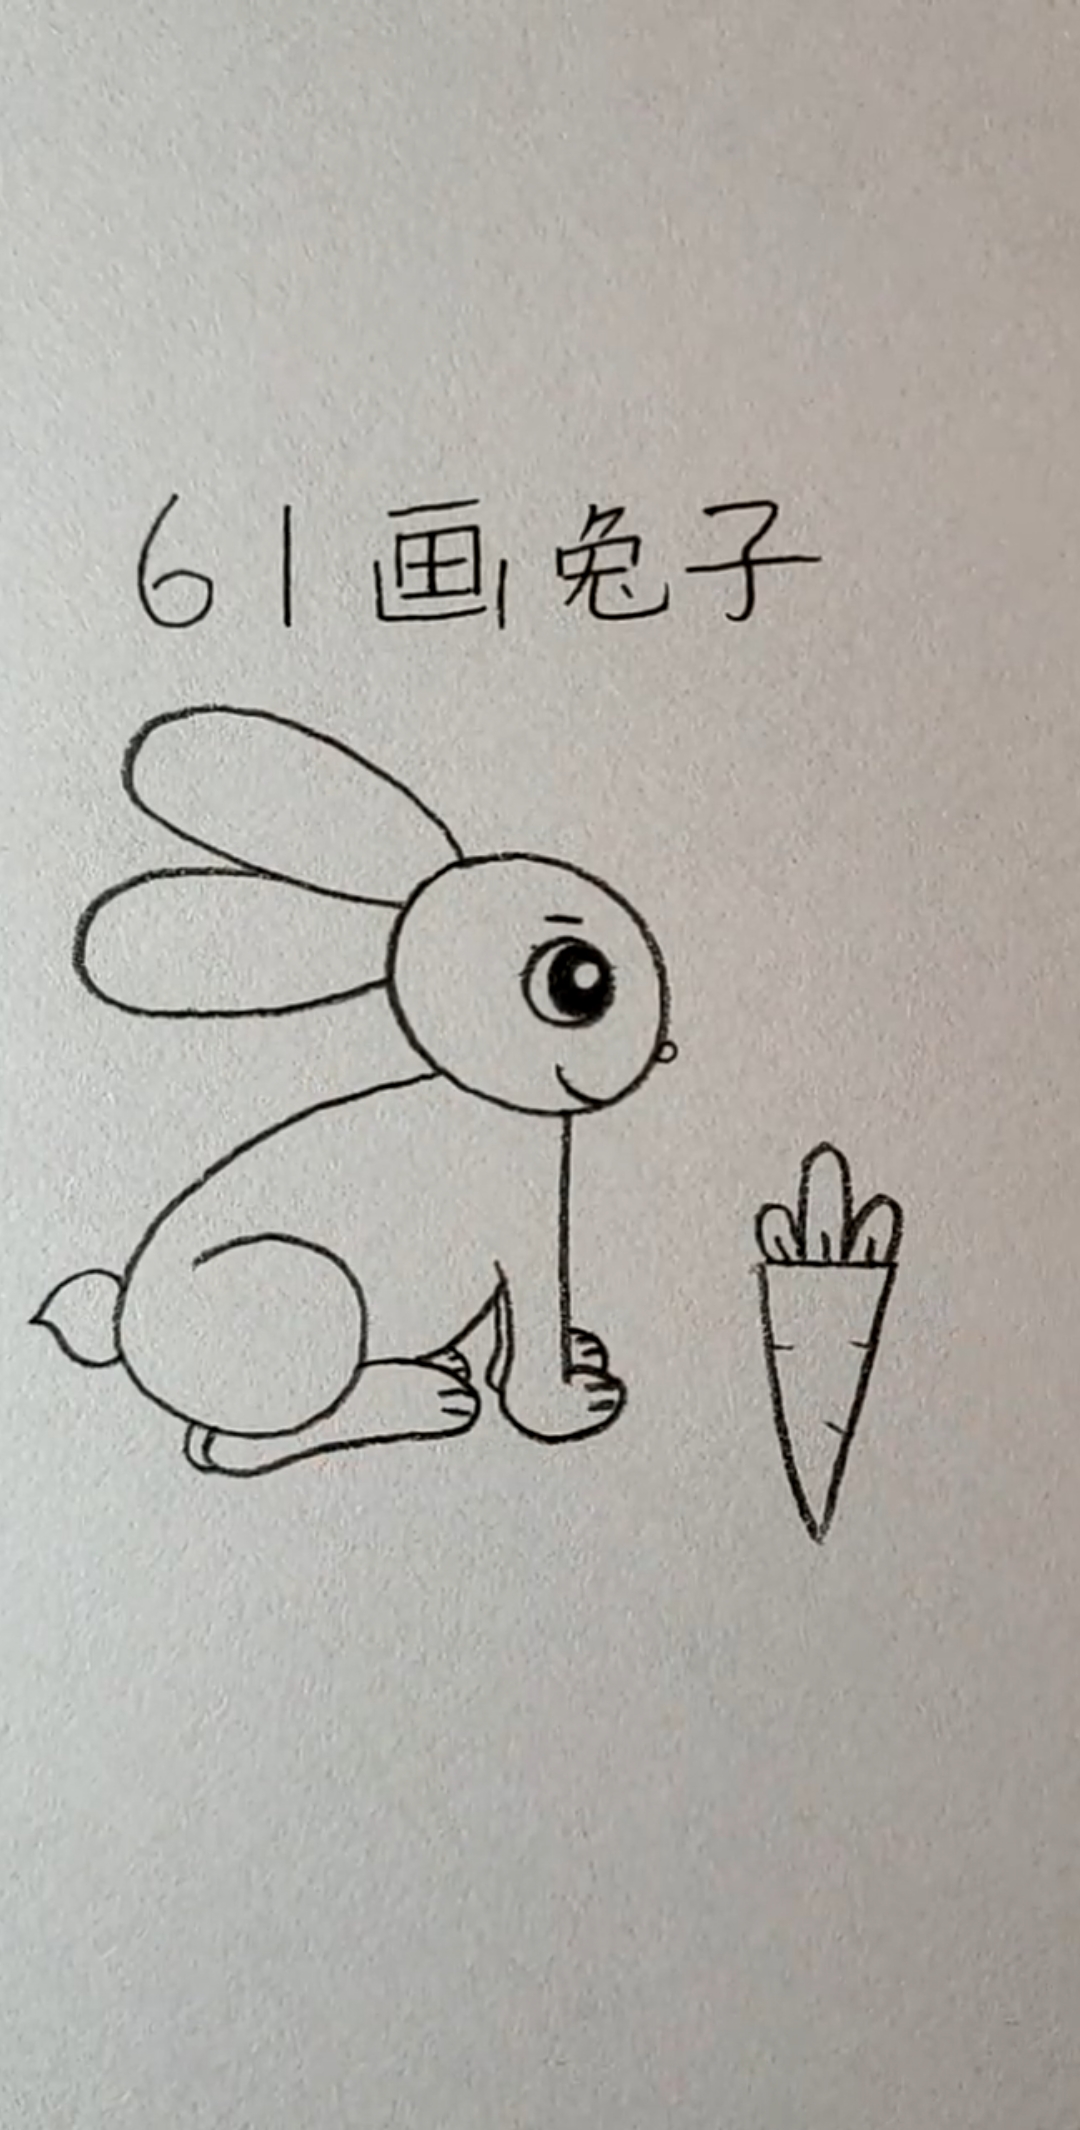 用数字6和1画一只可爱的小兔子,画法超级简单,教给宝宝一起画吧